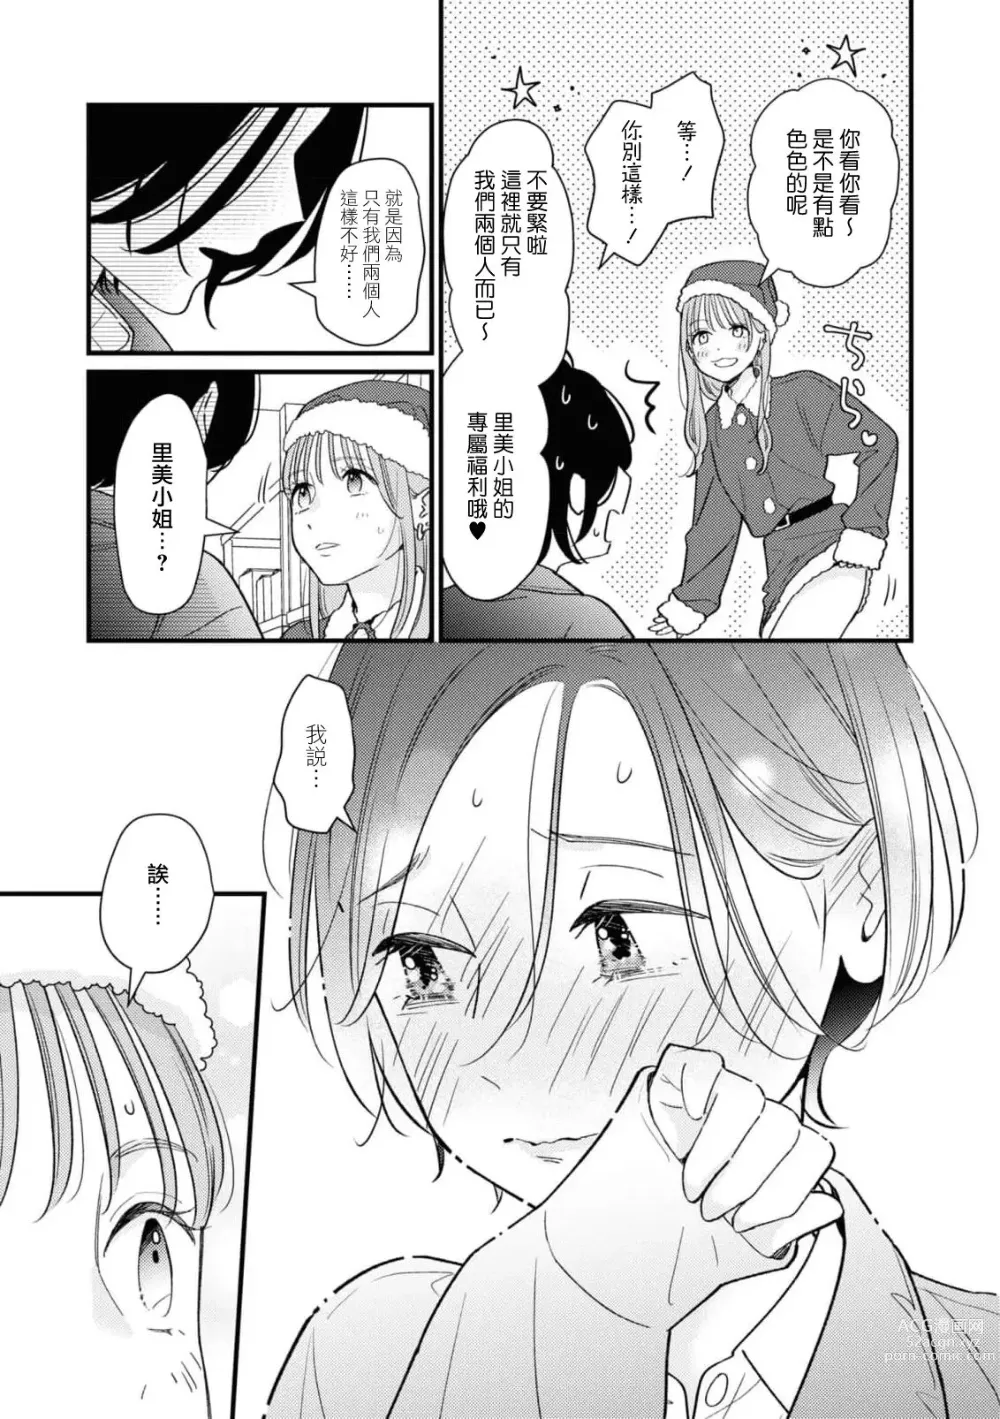 Page 7 of manga 延长30分钟的浪漫